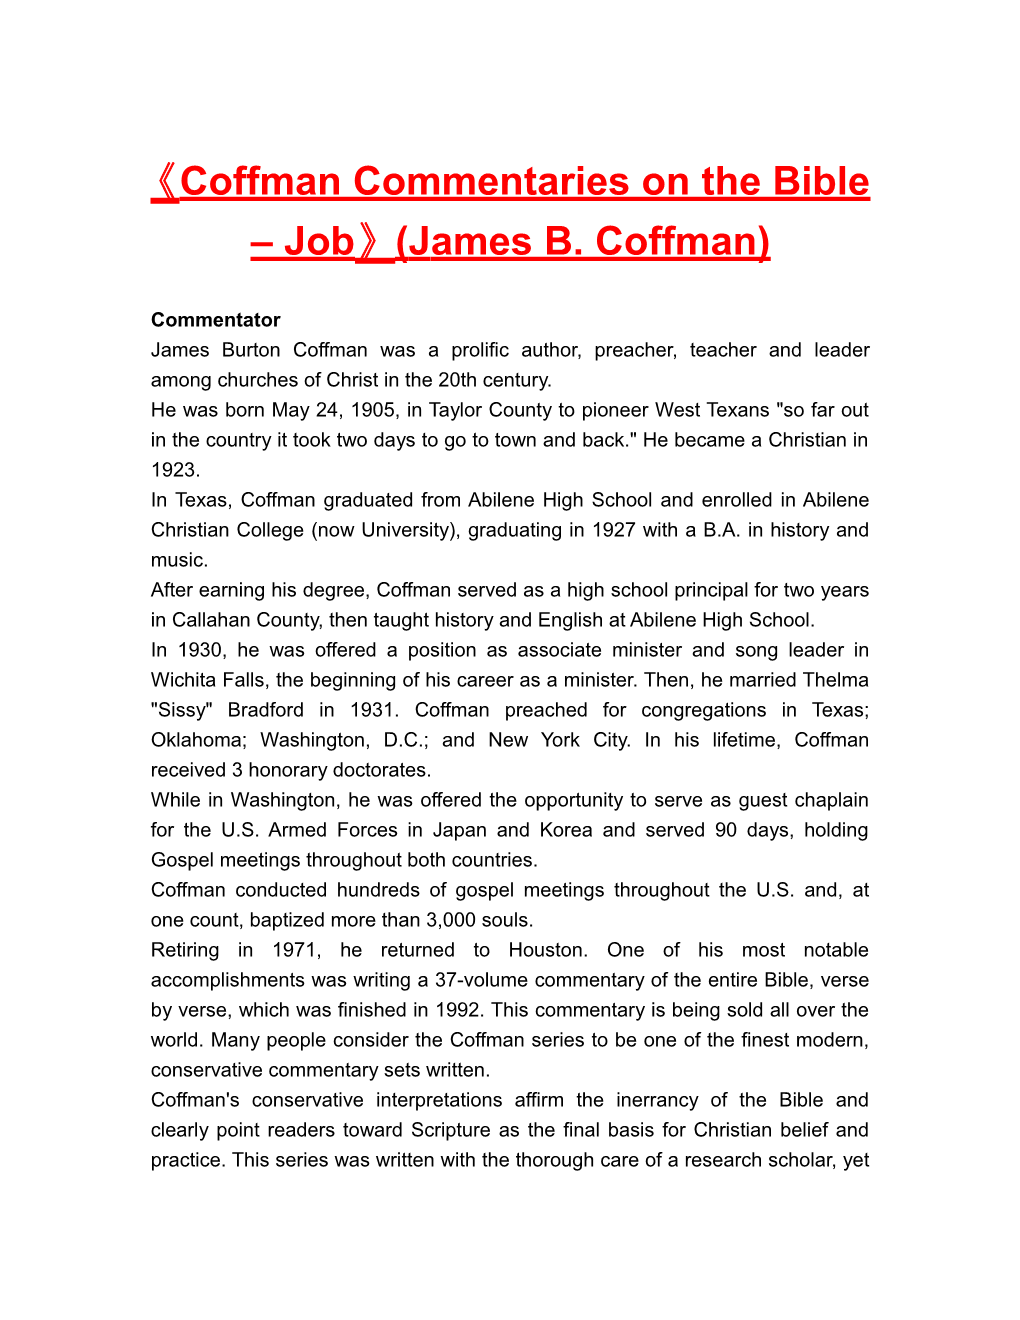 Coffman Commentaries on the Bible Job (James B. Coffman)